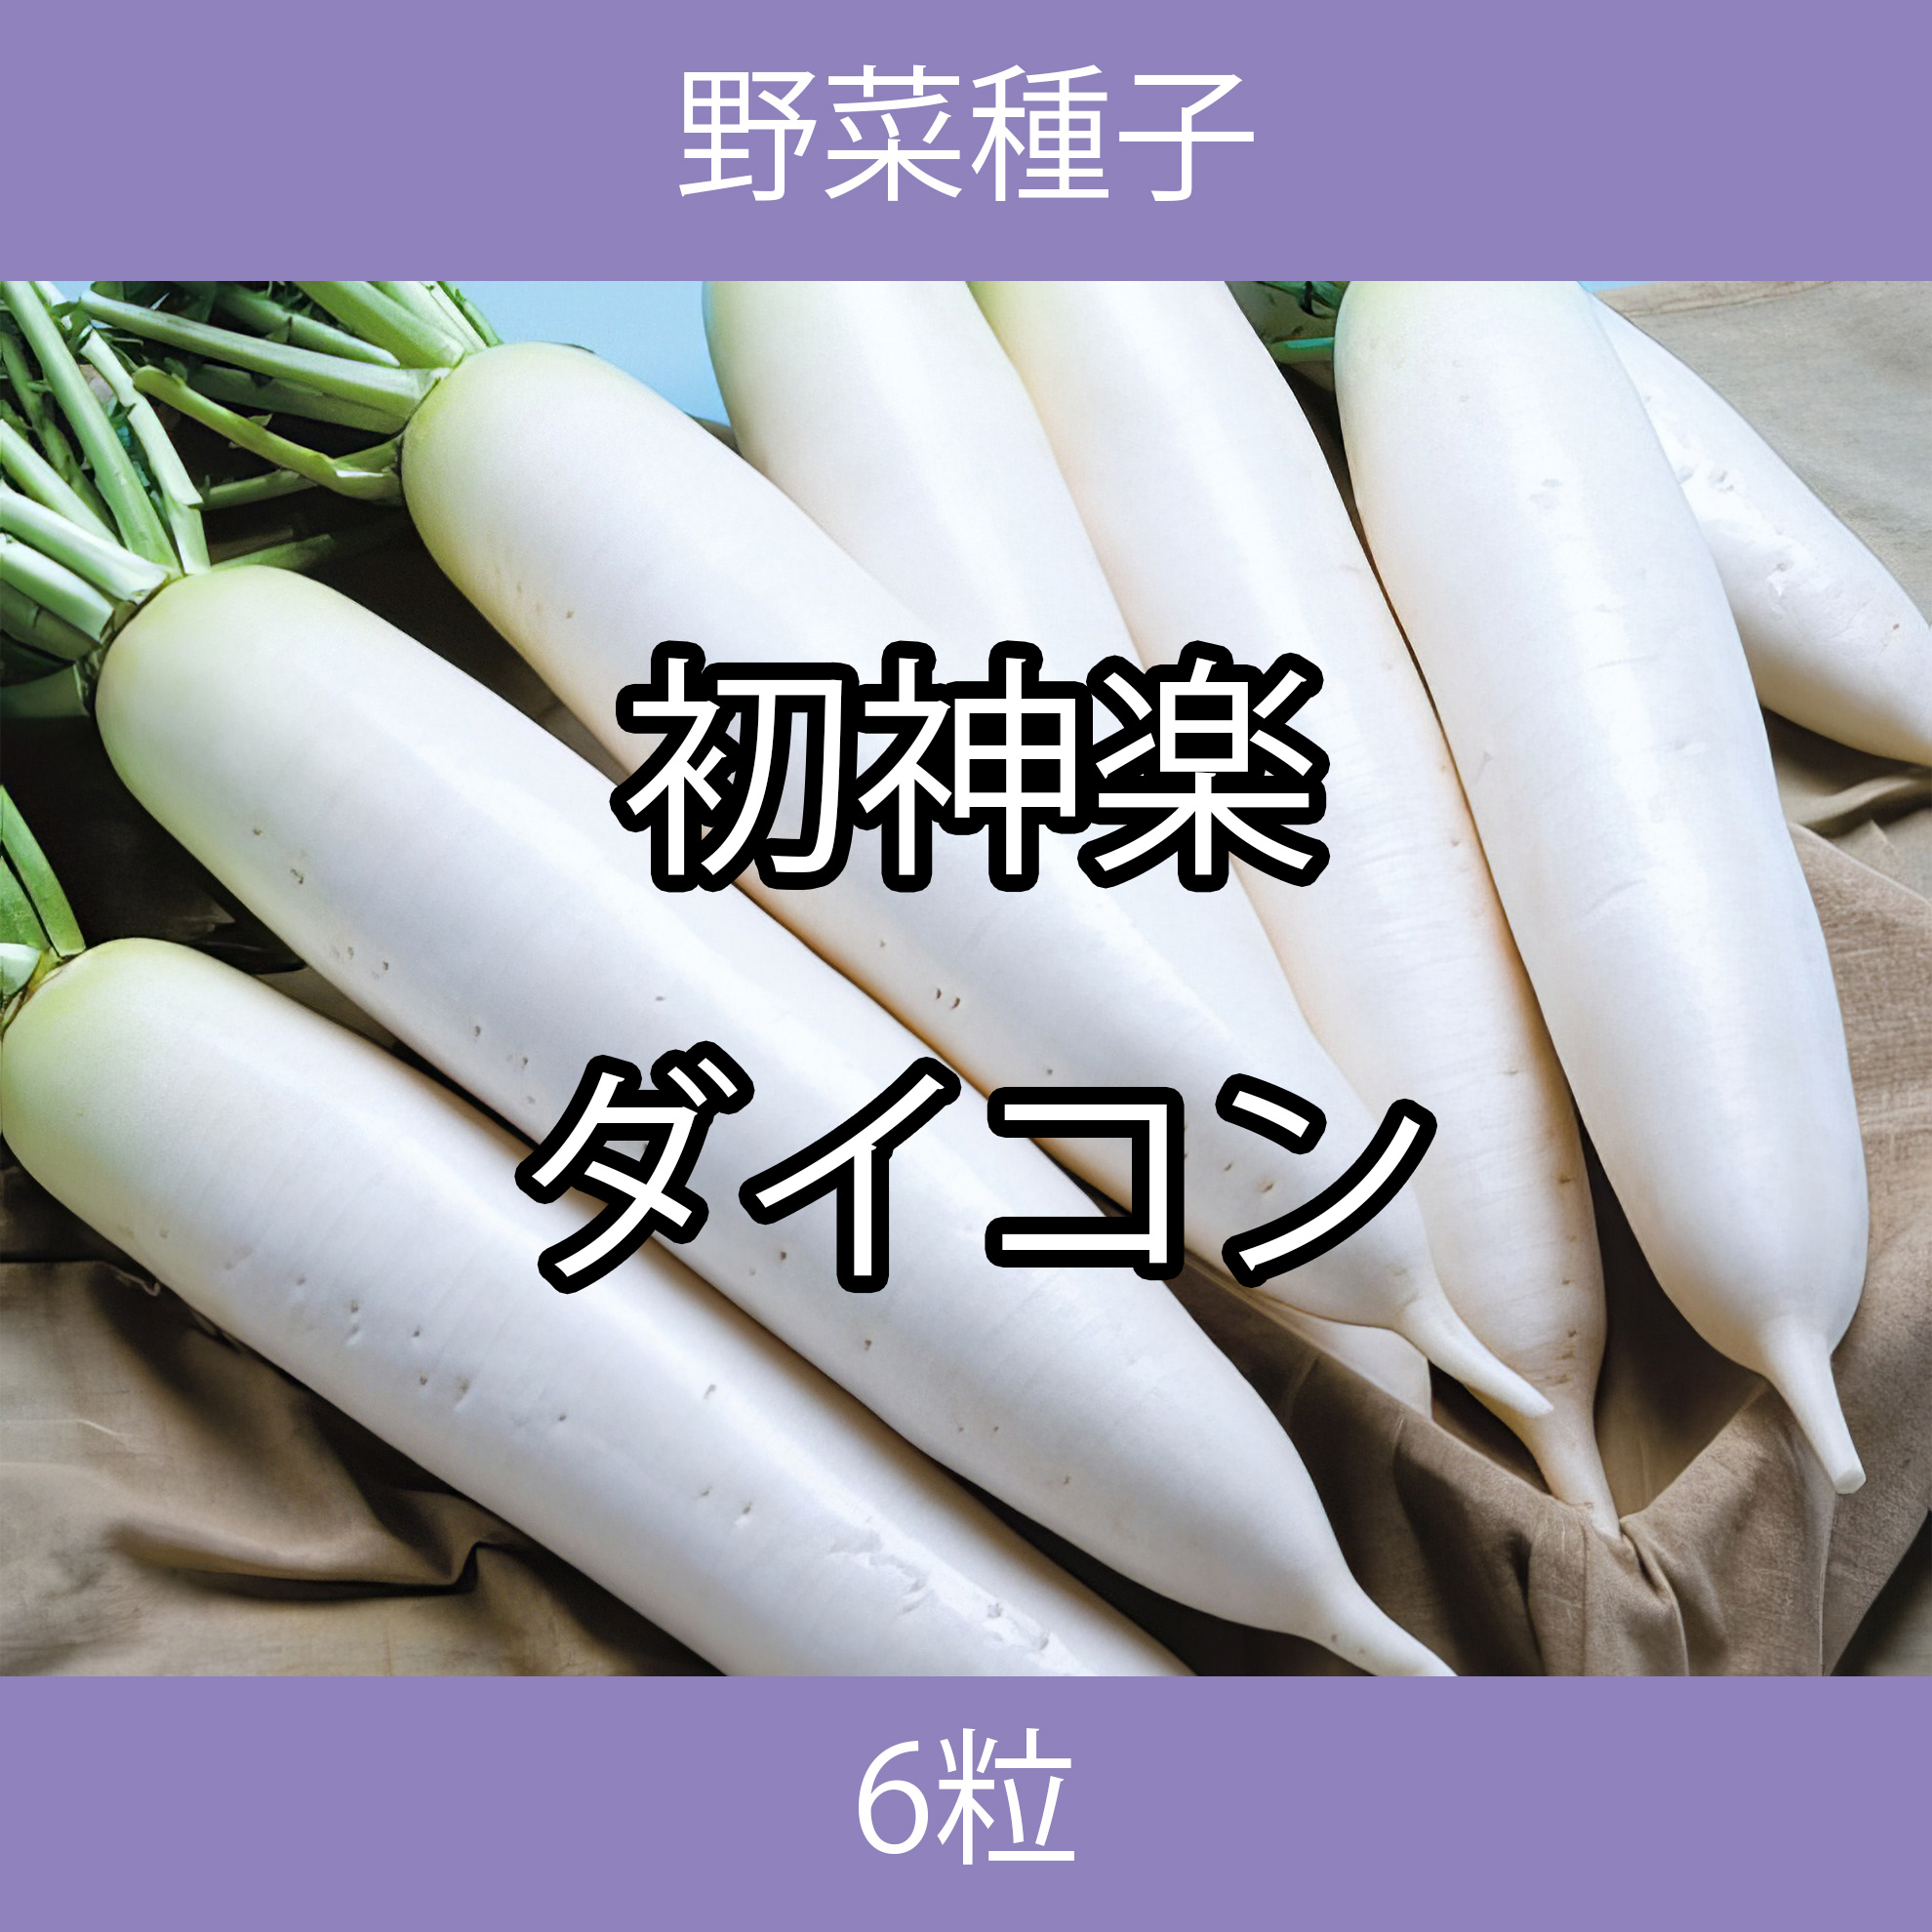 野菜種子 TVF04 初神楽ダイコン 6粒